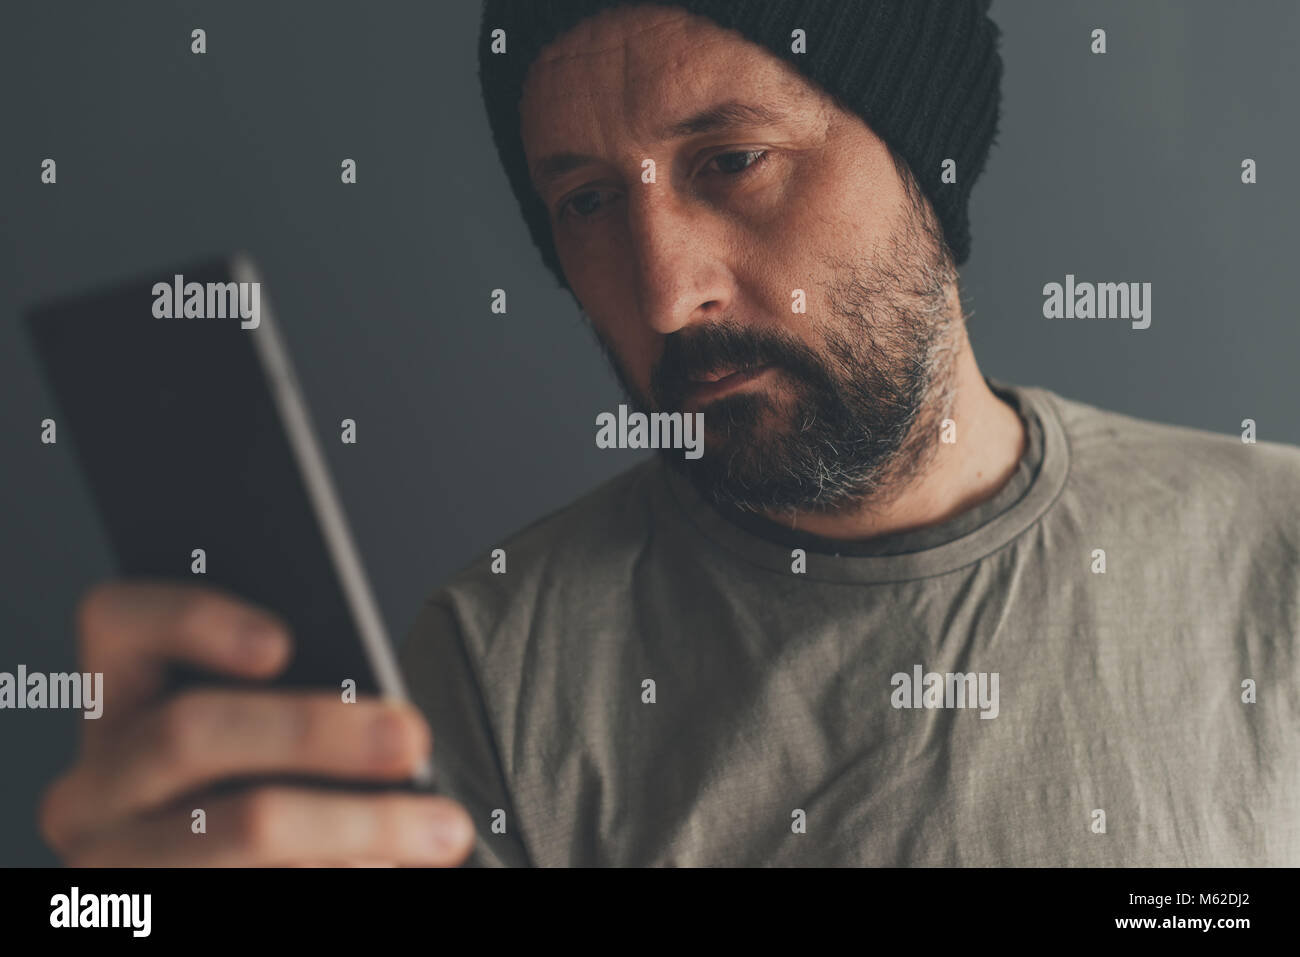 Casual maschio adulto con cappuccio guardando il telefono cellulare e il basso la chiave di comunicazione e stile di vita ritratto con il fuoco selettivo Foto Stock